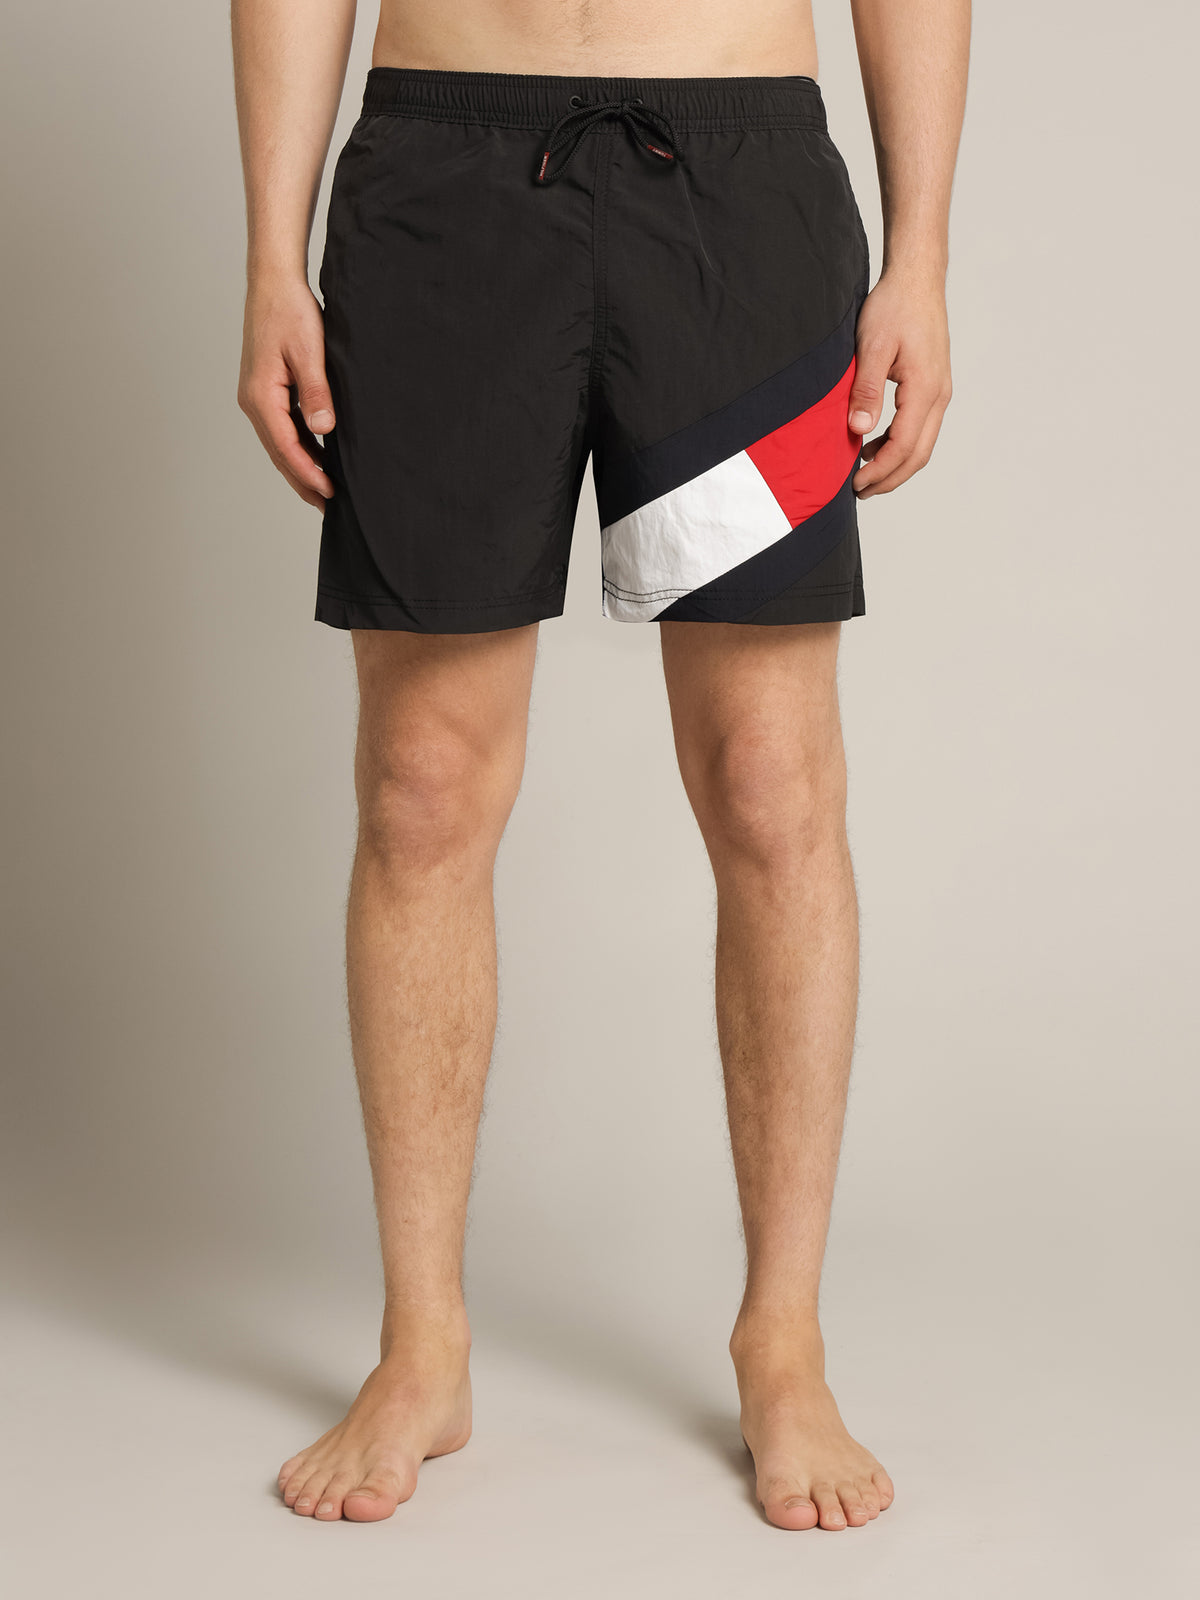 SF Medium Drawstring Swim Shorts in Black